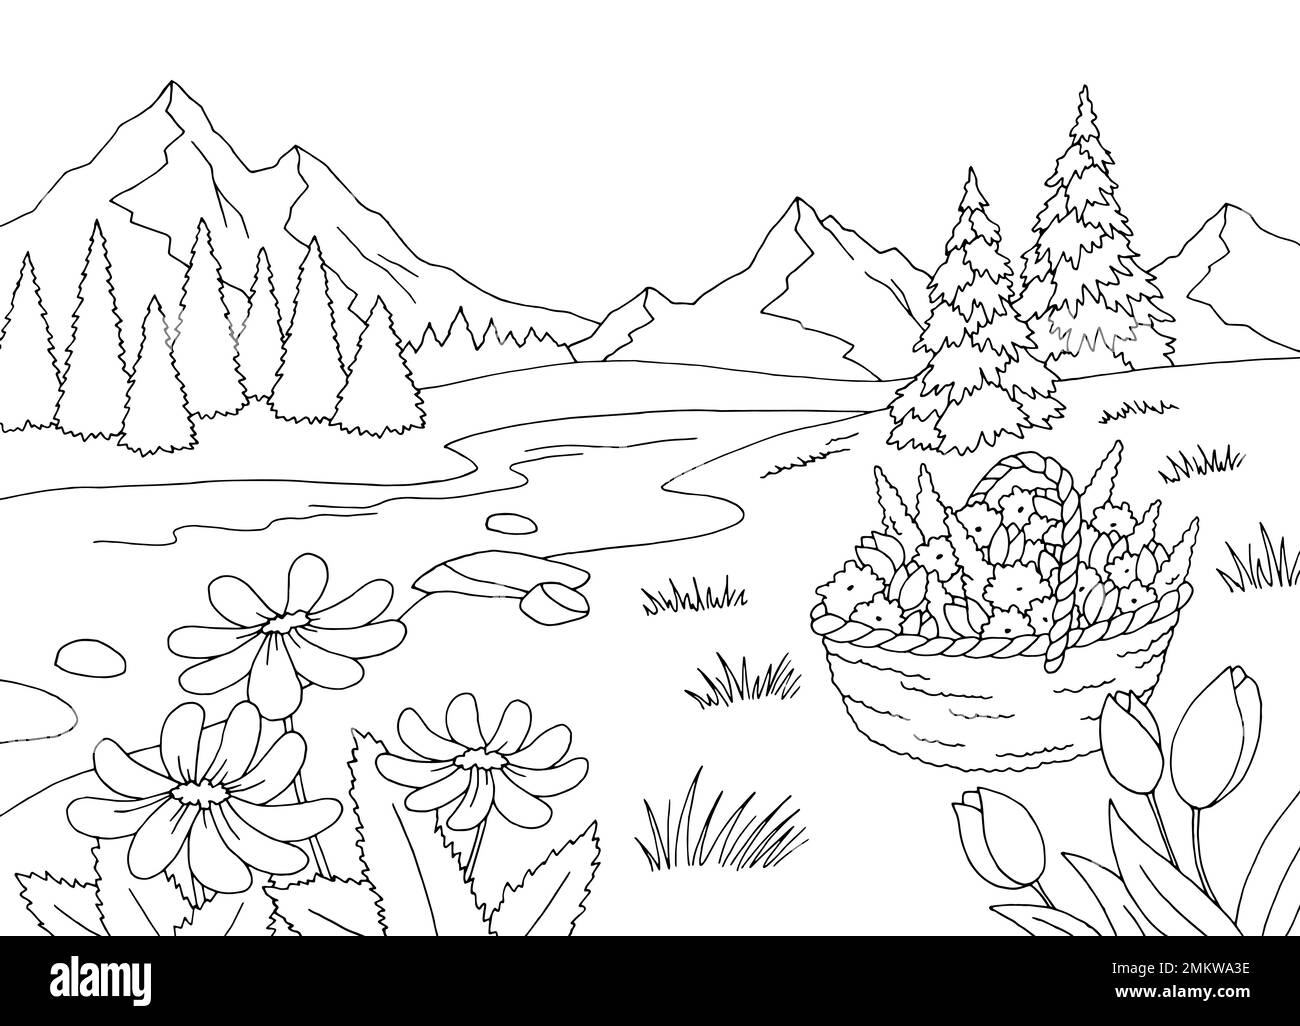 Mountain River graphique noir blanc paysage dessin illustration vecteur Illustration de Vecteur